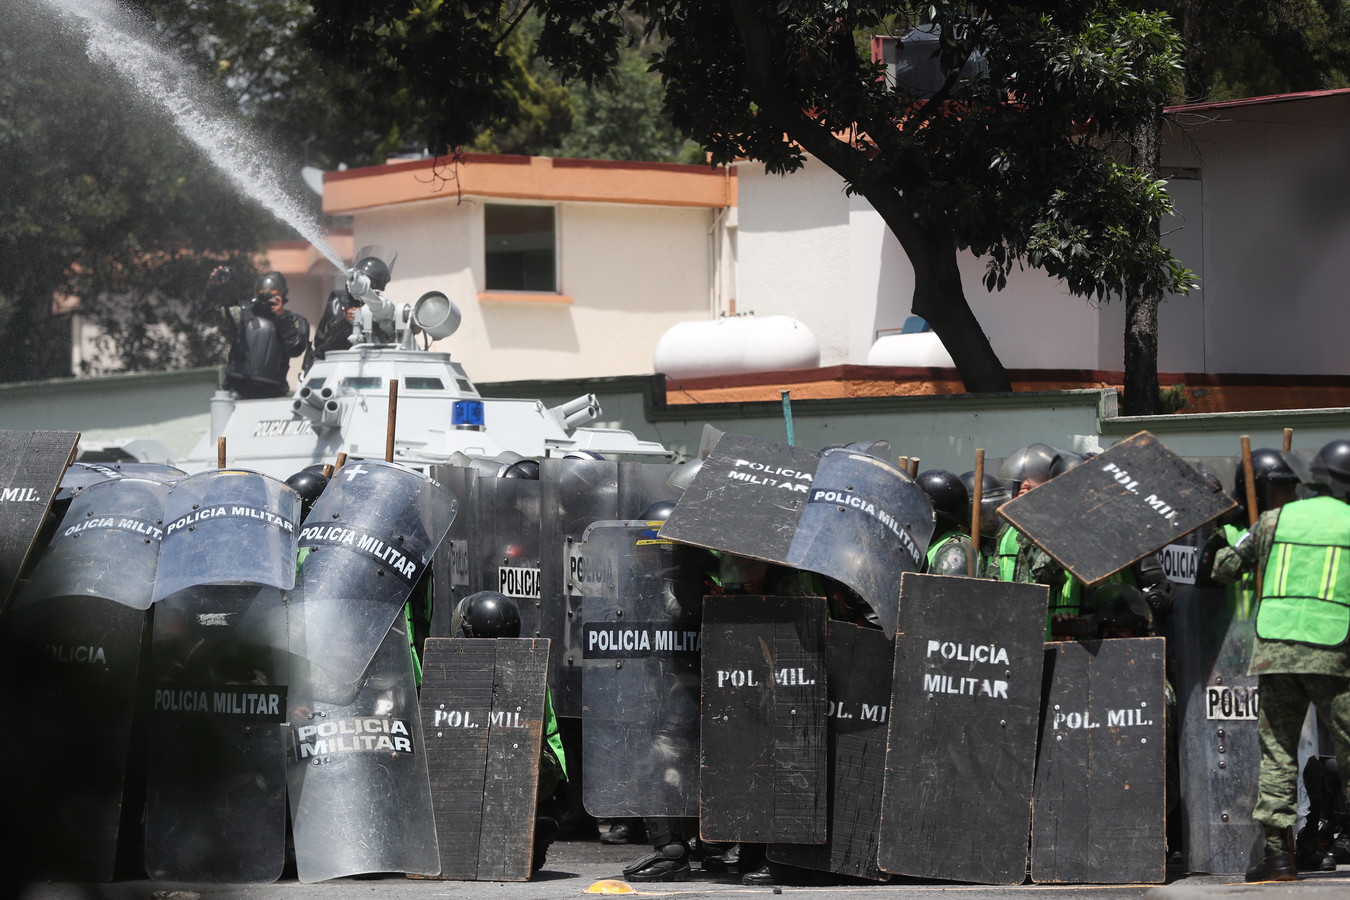 Militaire Politie in Mexico-Stad in cordon rond een waterkanon waarmee geprobeerd wordt de demonstranten uit elkaar te drijven.